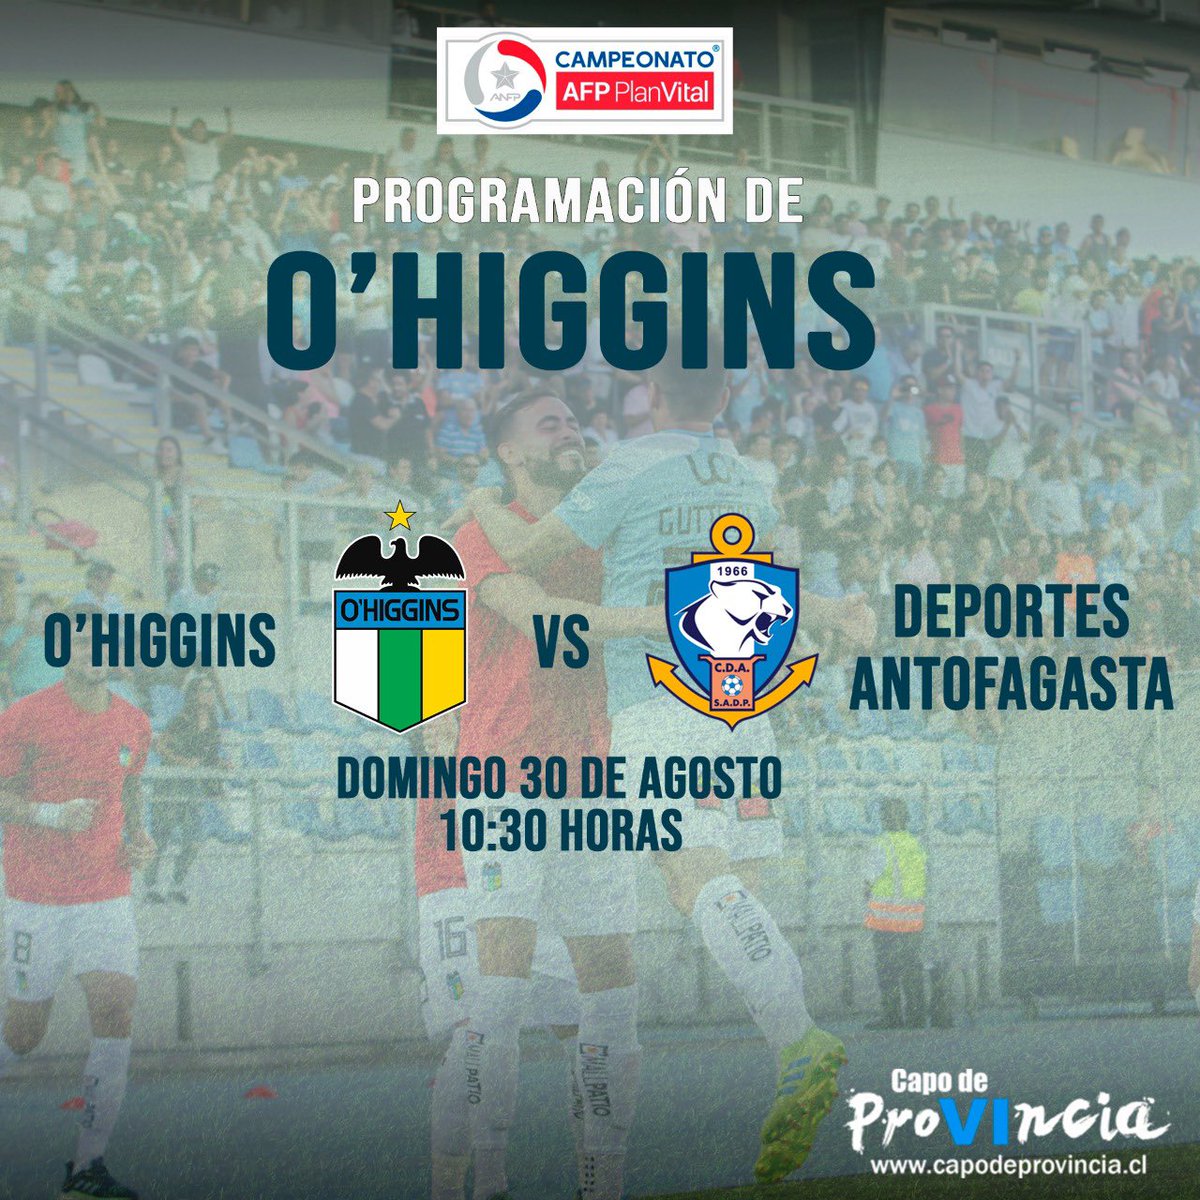 🔴 ¡Cambio de horario! El encuentro entre #OHiggins y Deportes #Antofagasta fue modificado para este domingo 30 de agosto a las 10:30 horas. Será transmitido por CDFP, CDFHD y Estadio CDF.